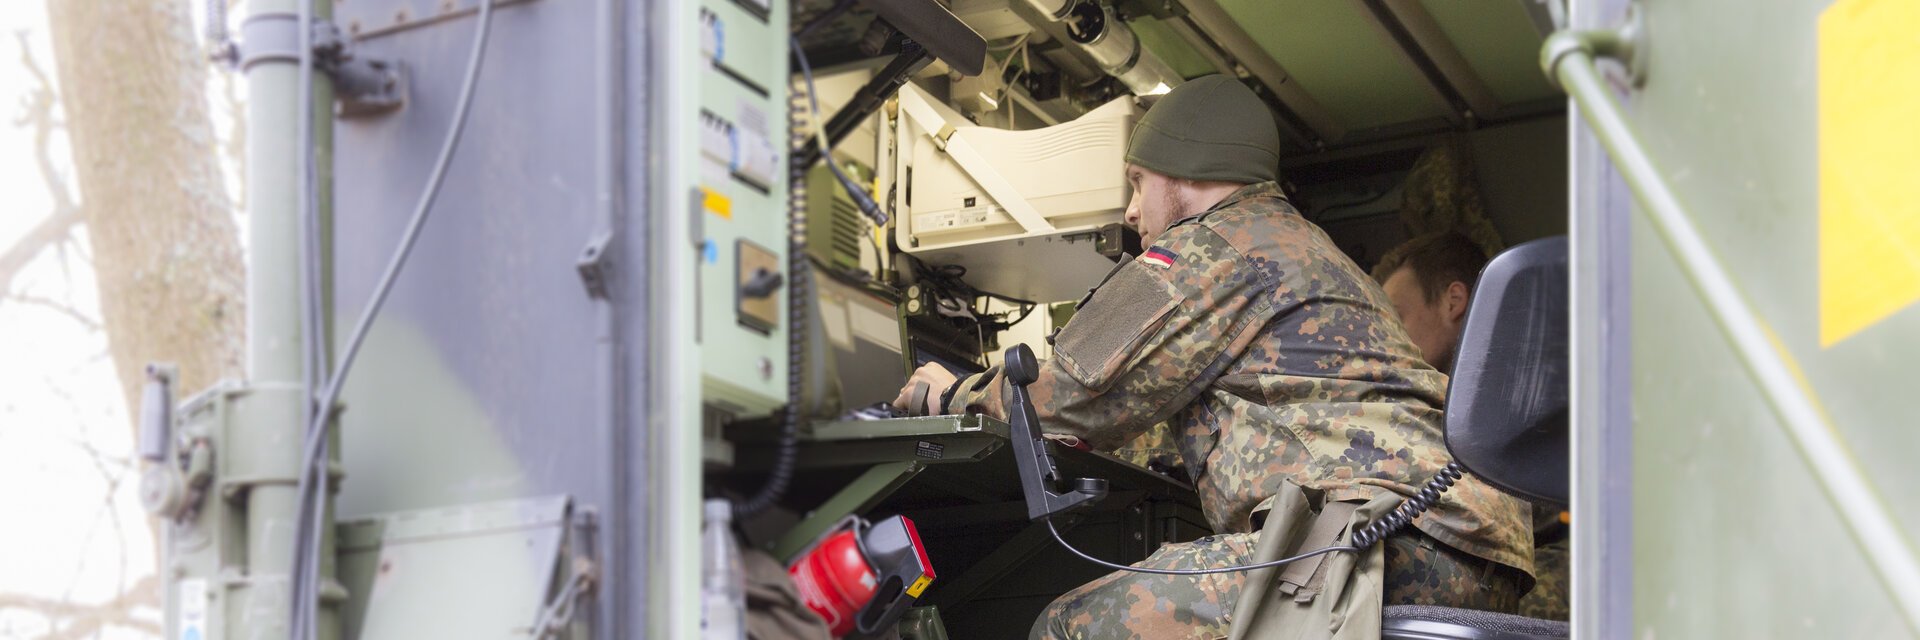 Ein Soldat in Uniform sitzt in einem Metallcontainer, der elektronisches Equipment enthÃ¤lt und schaut auf einen Monitor